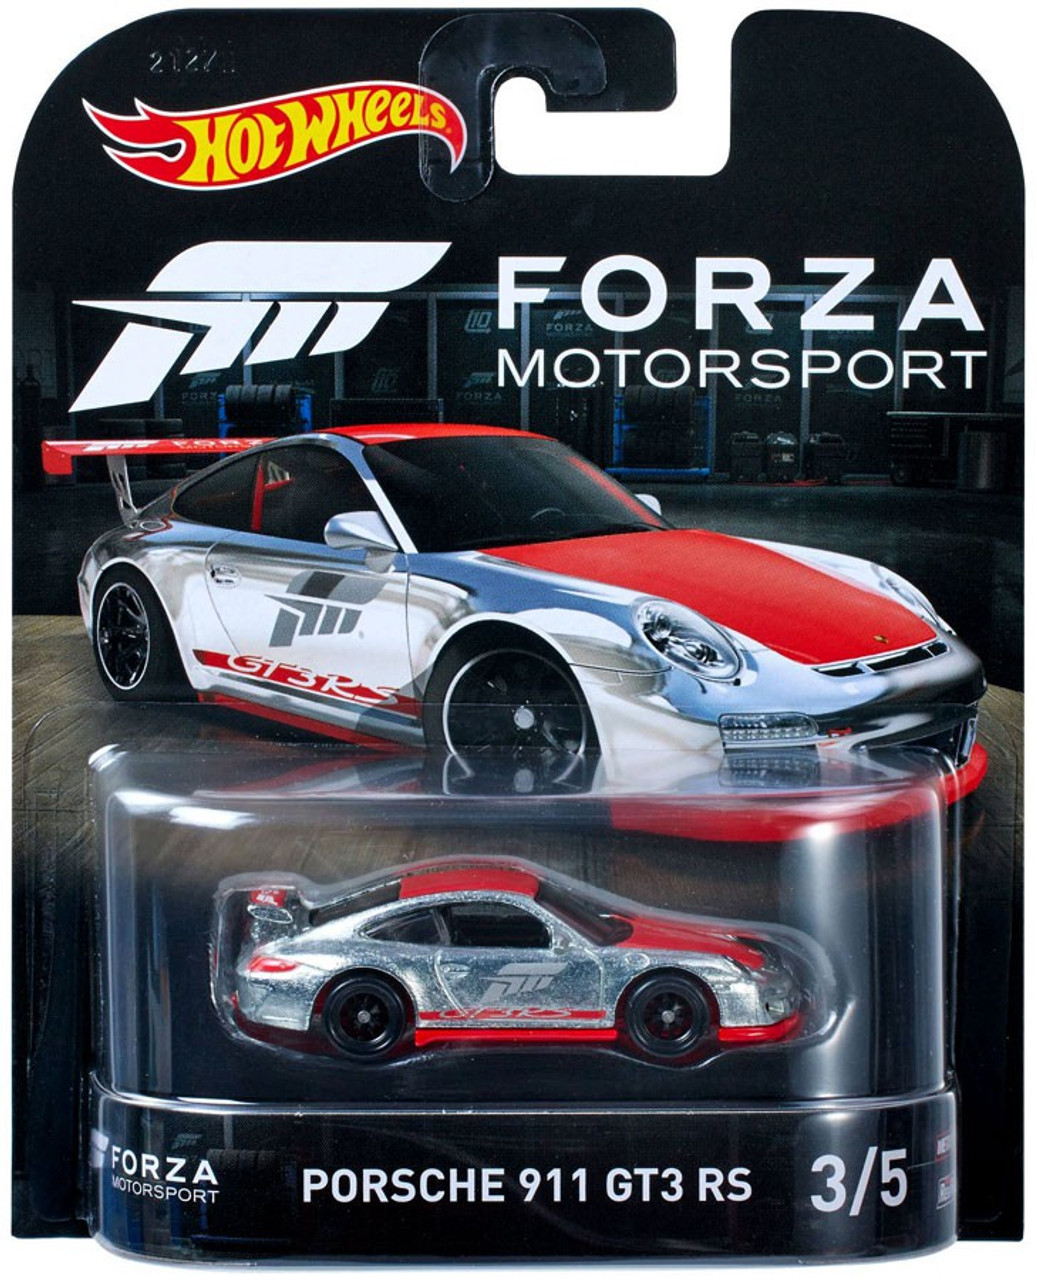 Hot Wheels Forza Motorsport Porsche 911 Gt3 Rs Die Cast Car 35